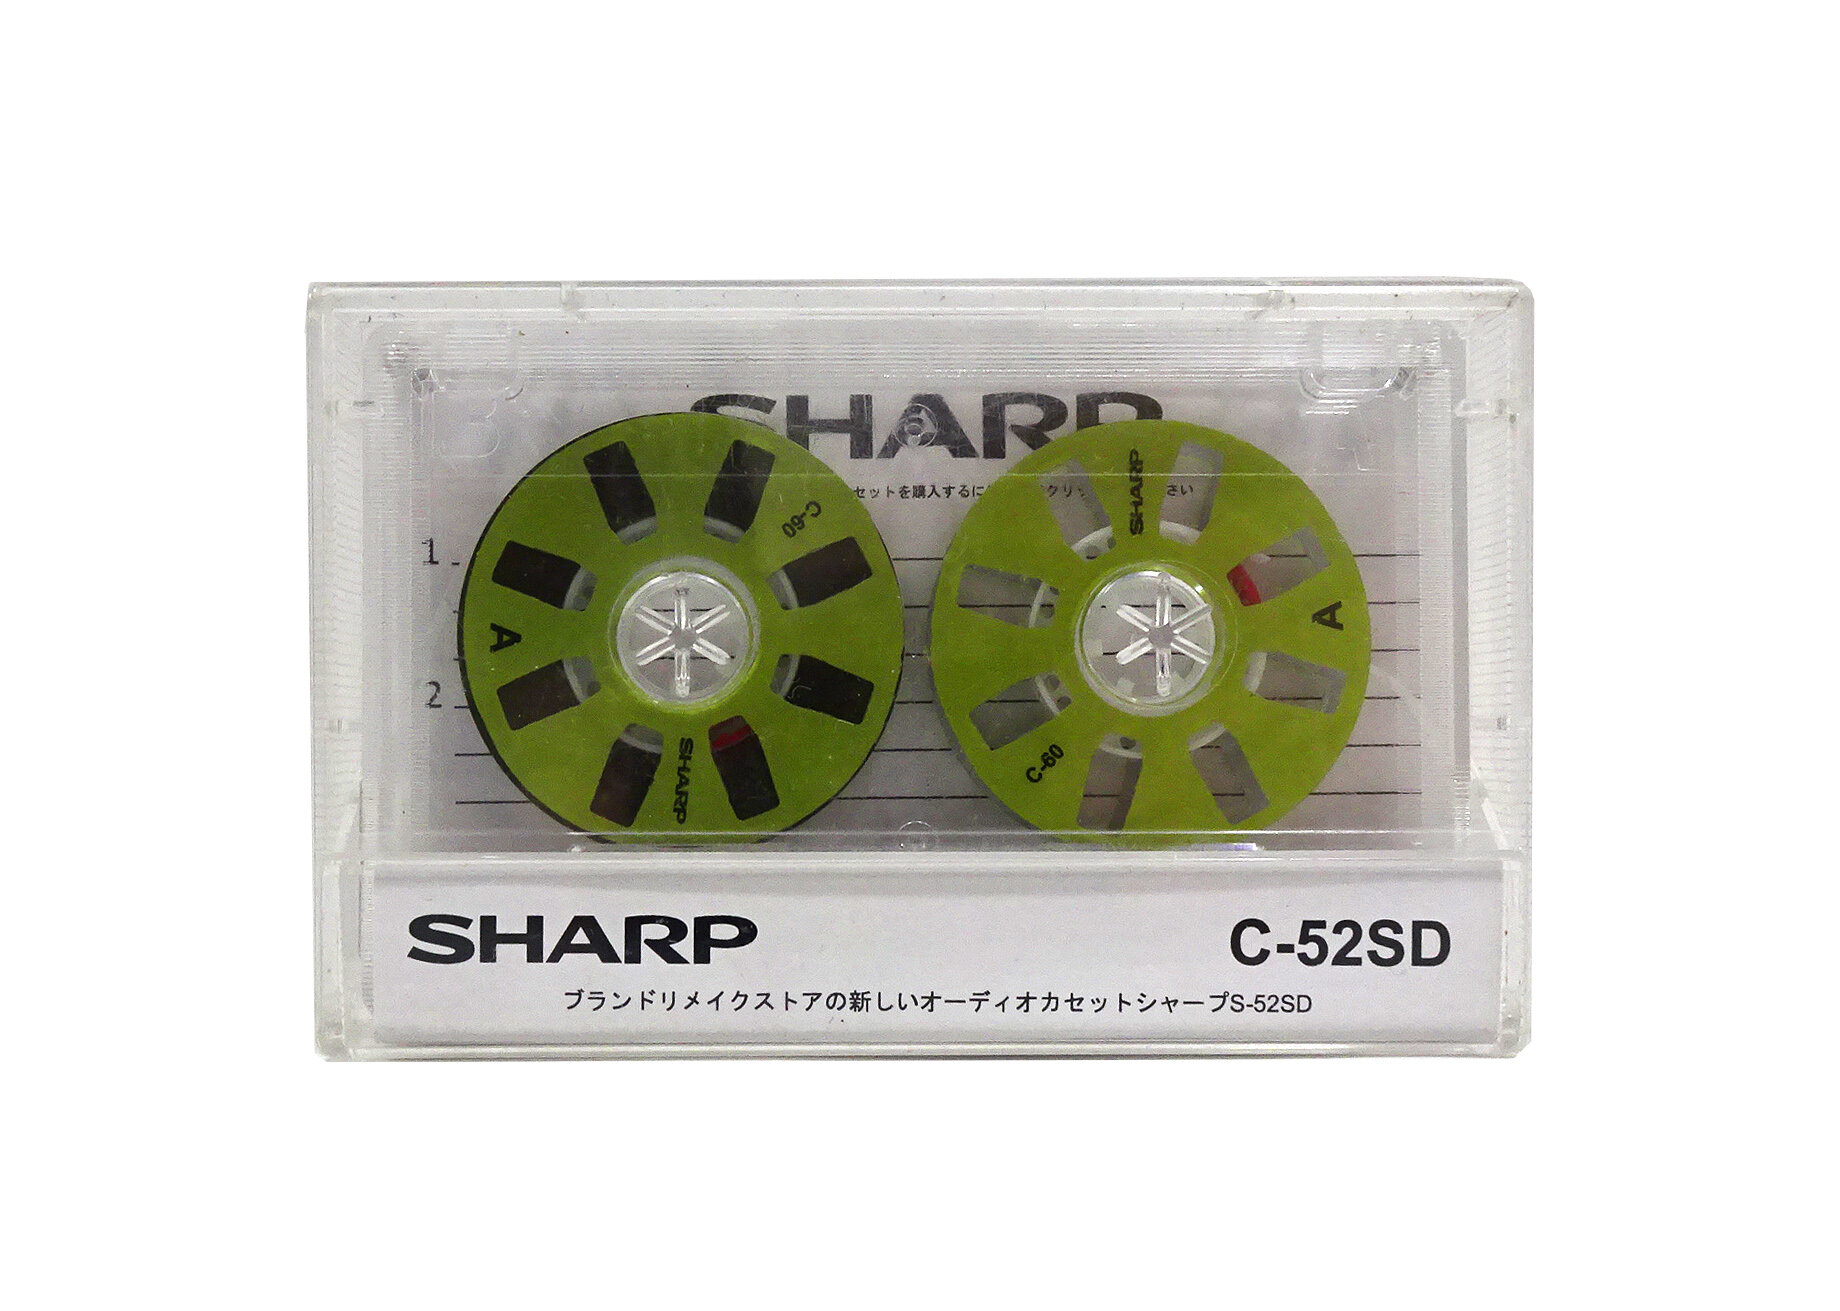 Аудиокассета "SHARP" c зелёными боббинками